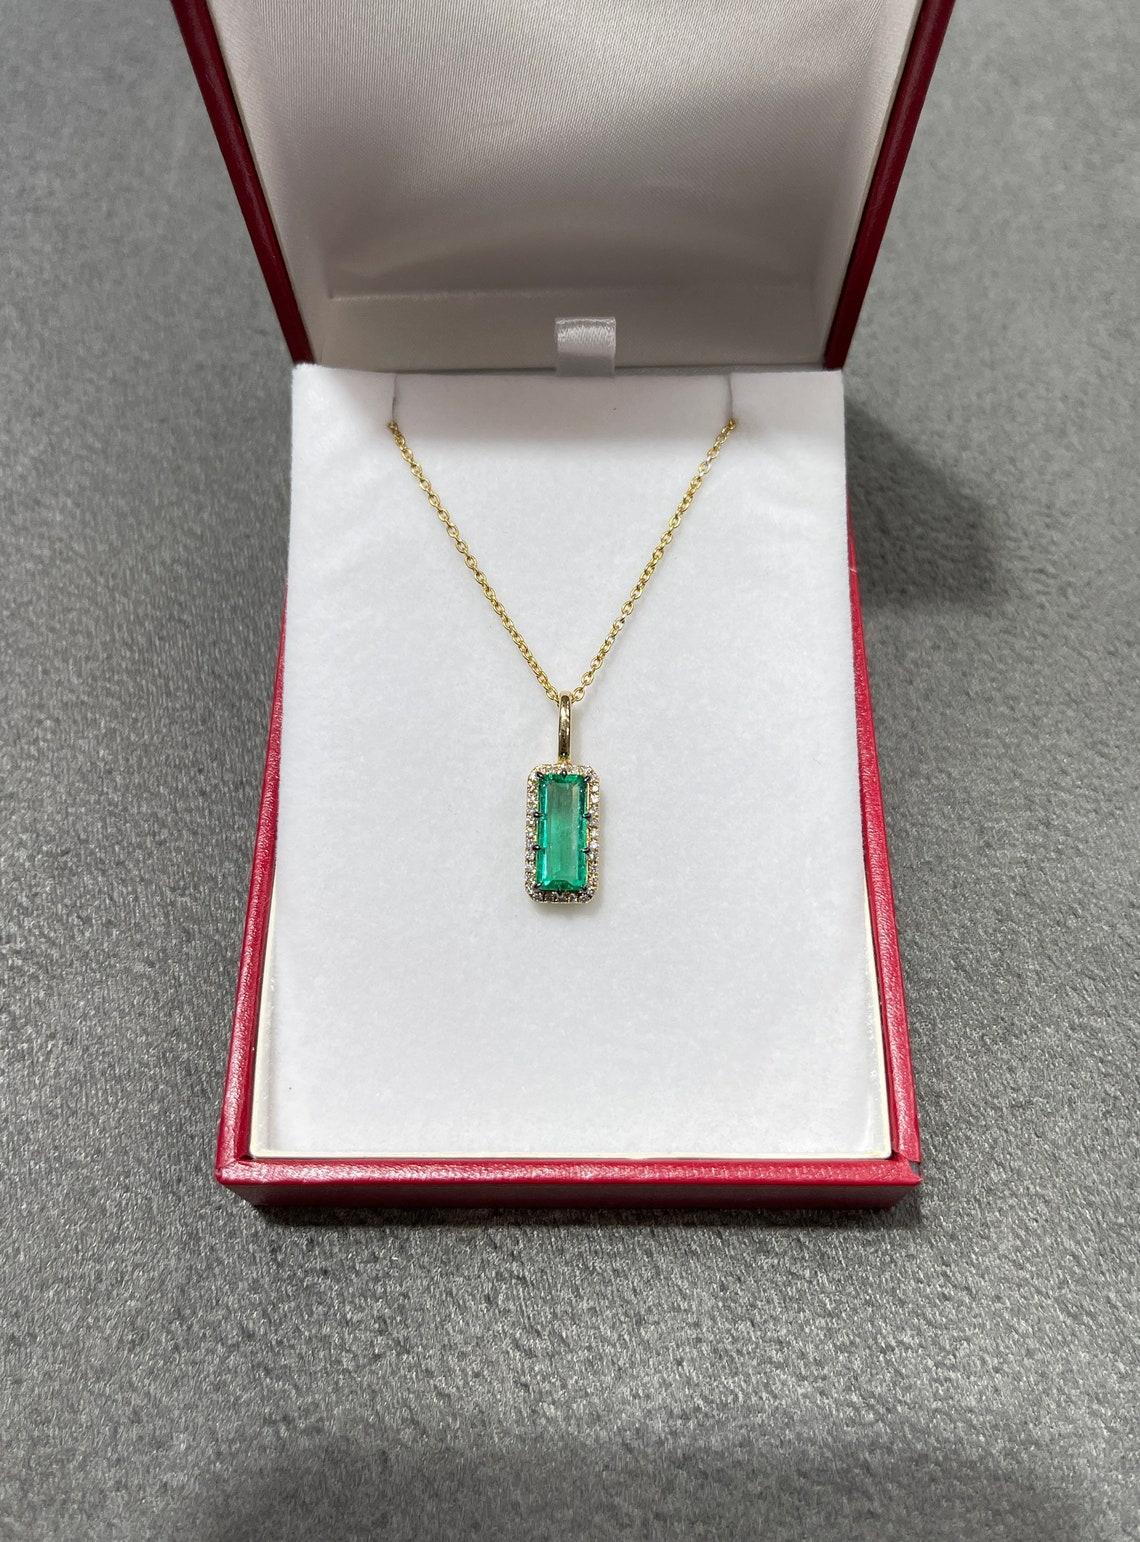 emerald cut necklace pendant